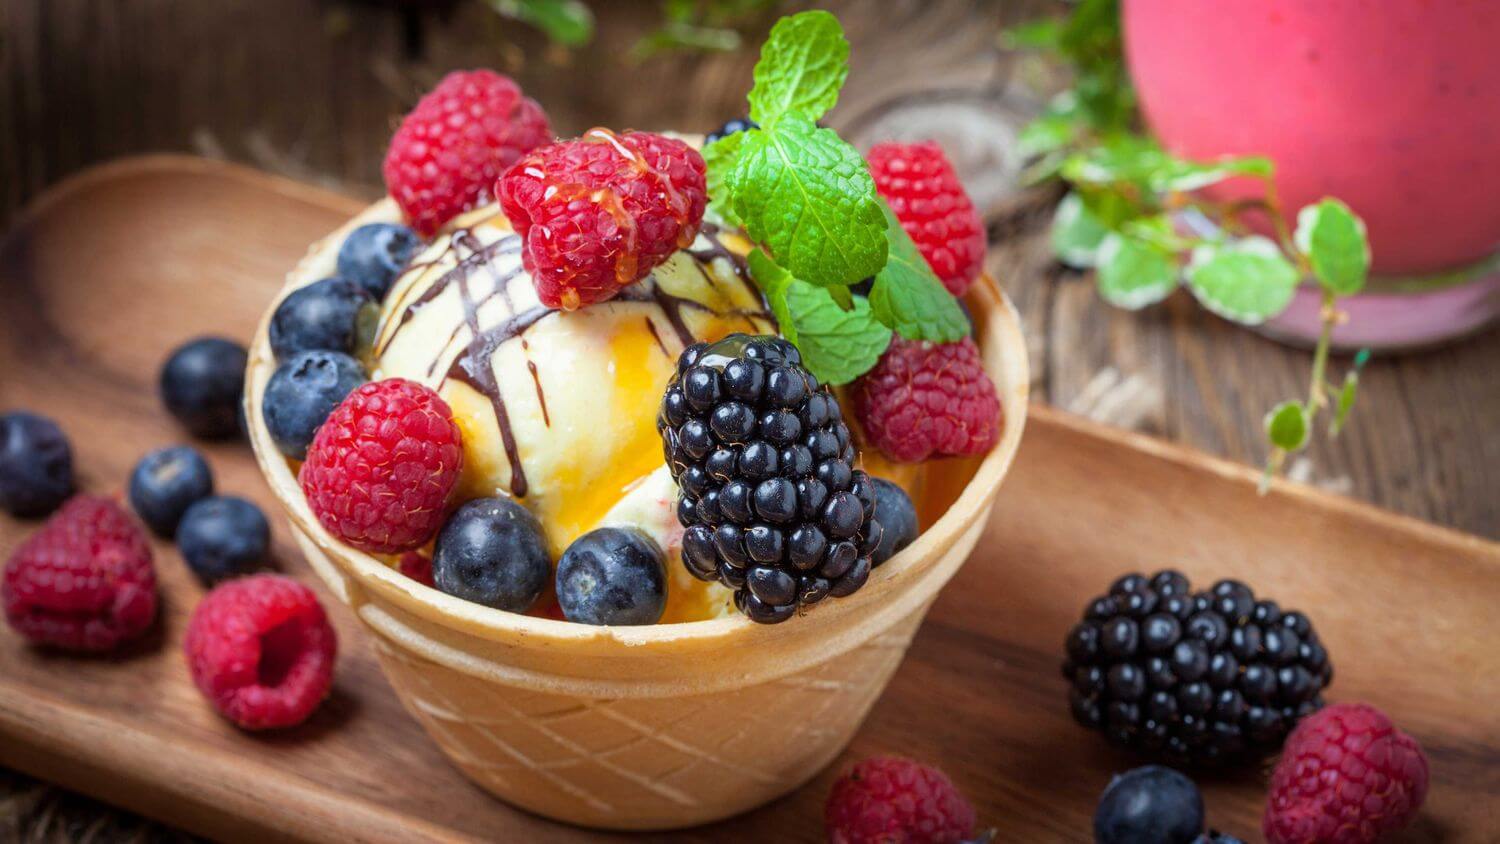 Пазл мороженое с ягодами - разгадать онлайн из раздела ...
 Мороженое с Ягодами